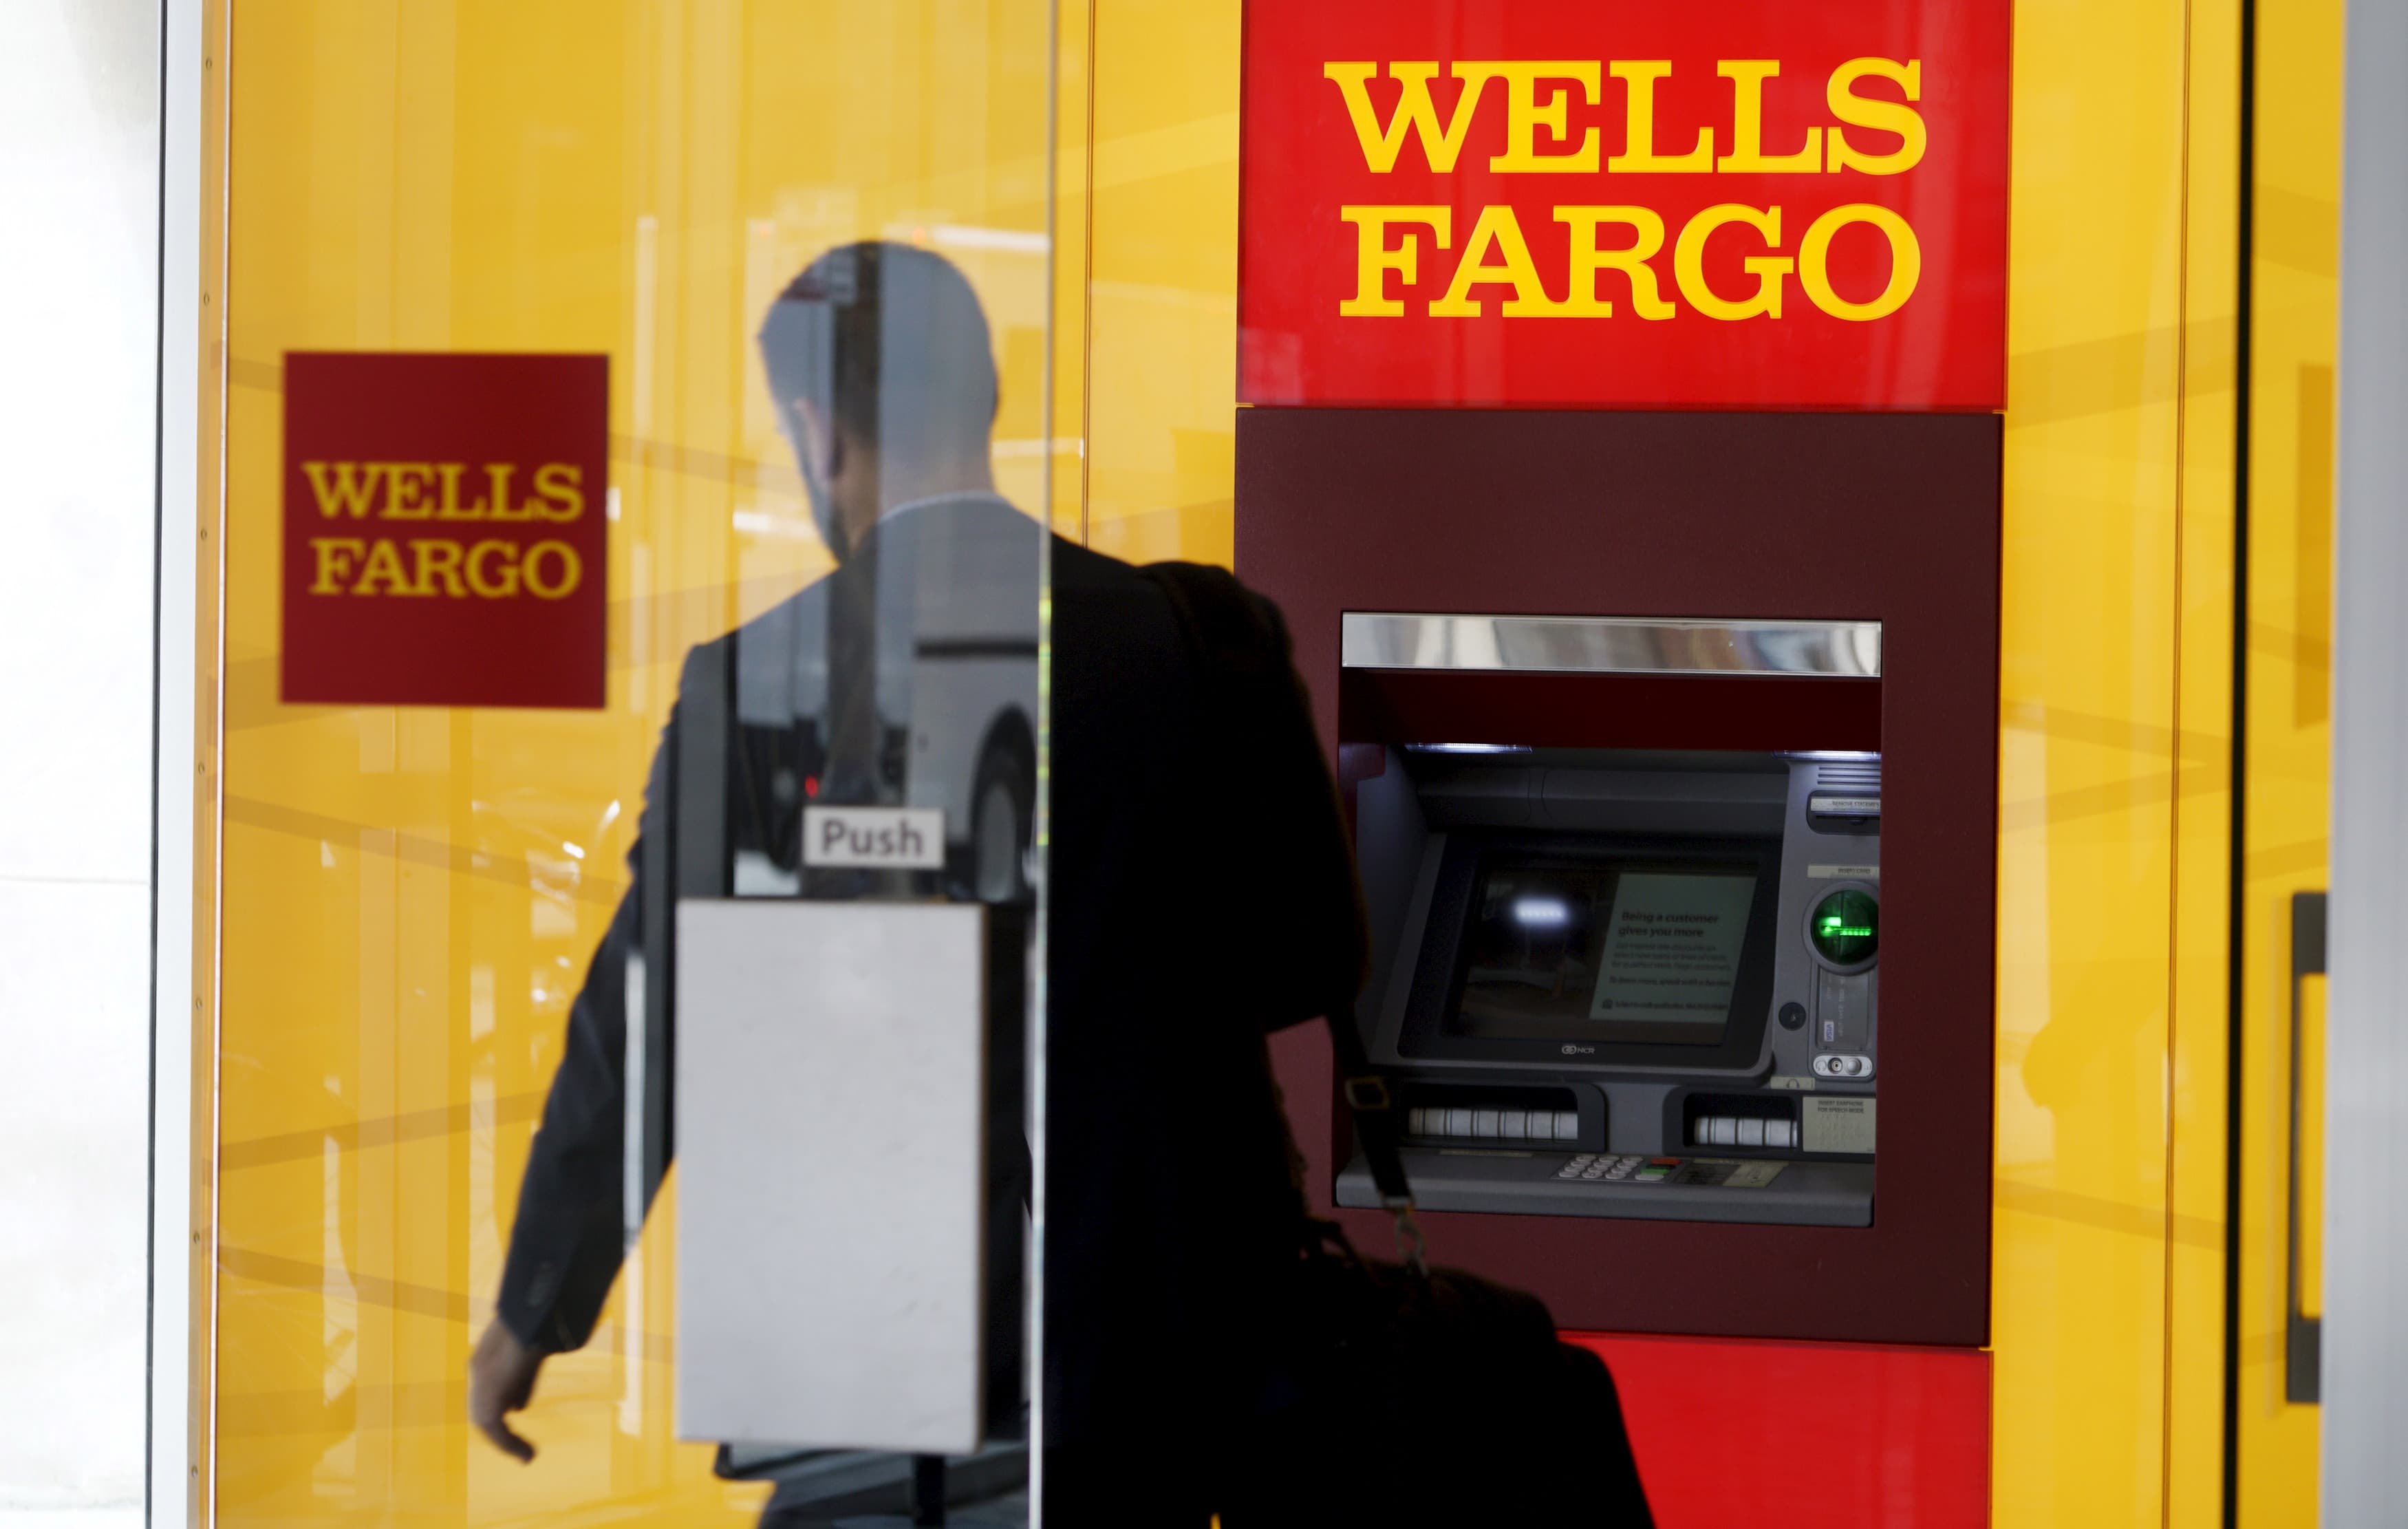 Wells Fargo-მ 3.7 მილიარდი დოლარის გადახდა დაავალა წარსულში სკანდალებისთვის. აი, რატომ ვხედავთ მას დადებითად